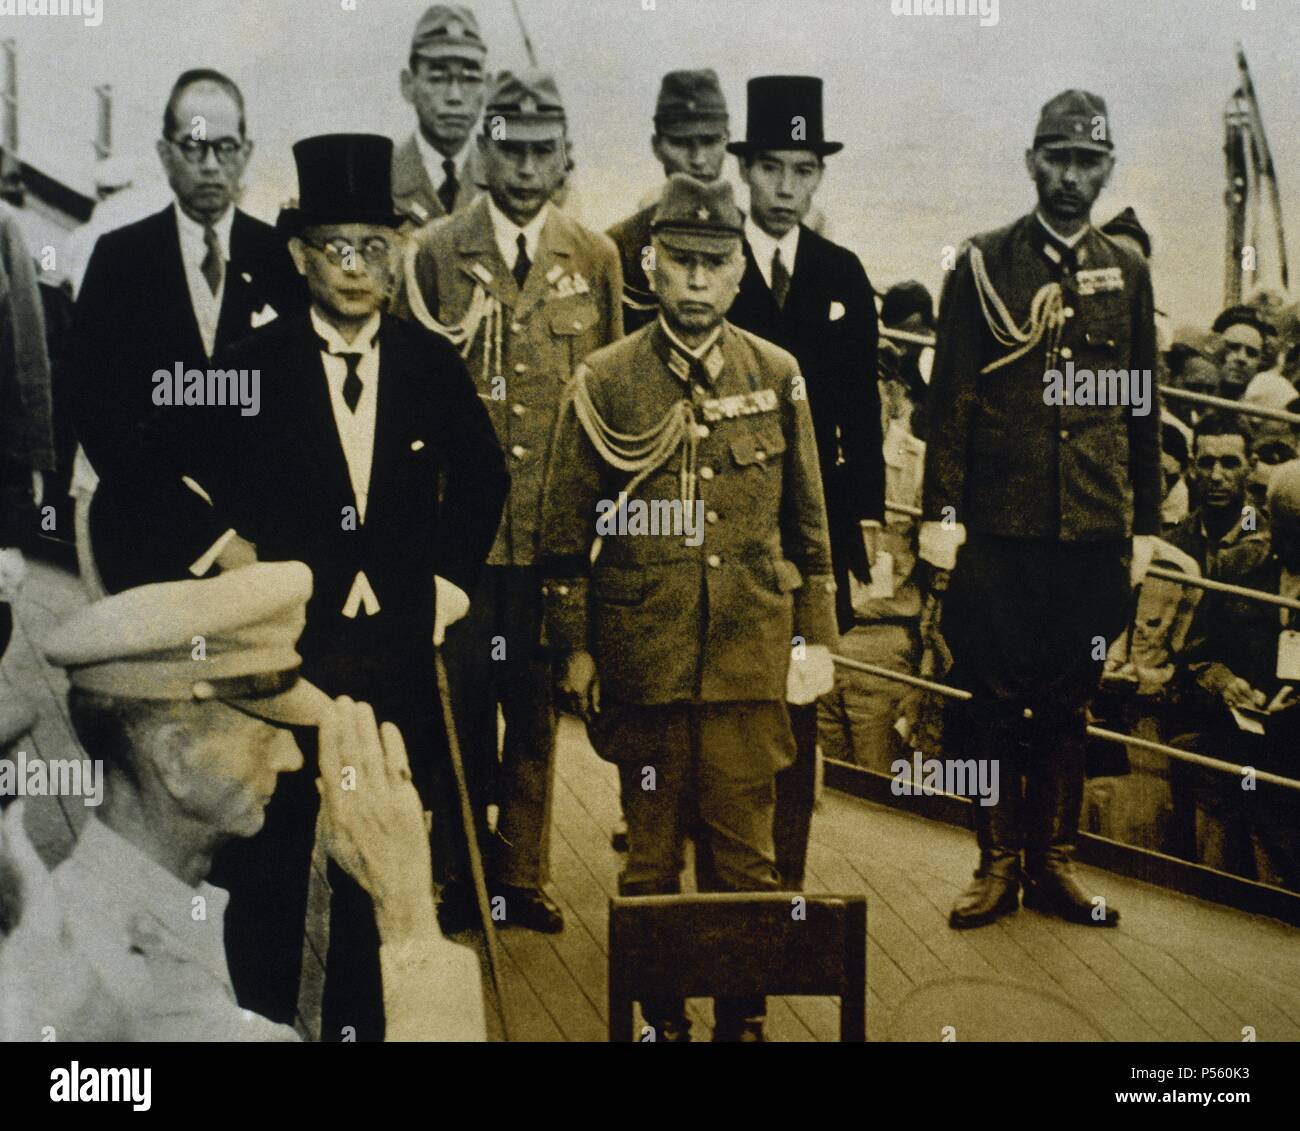 SEGUNDA GUERRA MUNDIAL. GUERRA DEL PACIFICO. Delegación Japonesa encabezada por Mamoru SHIGEMITSU (1887-1957), un bordo del Missouri para firmar la Capitulación de Japón el 2 de septiembre de 1945, finalizando la II Guerra Mundial. Foto Stock